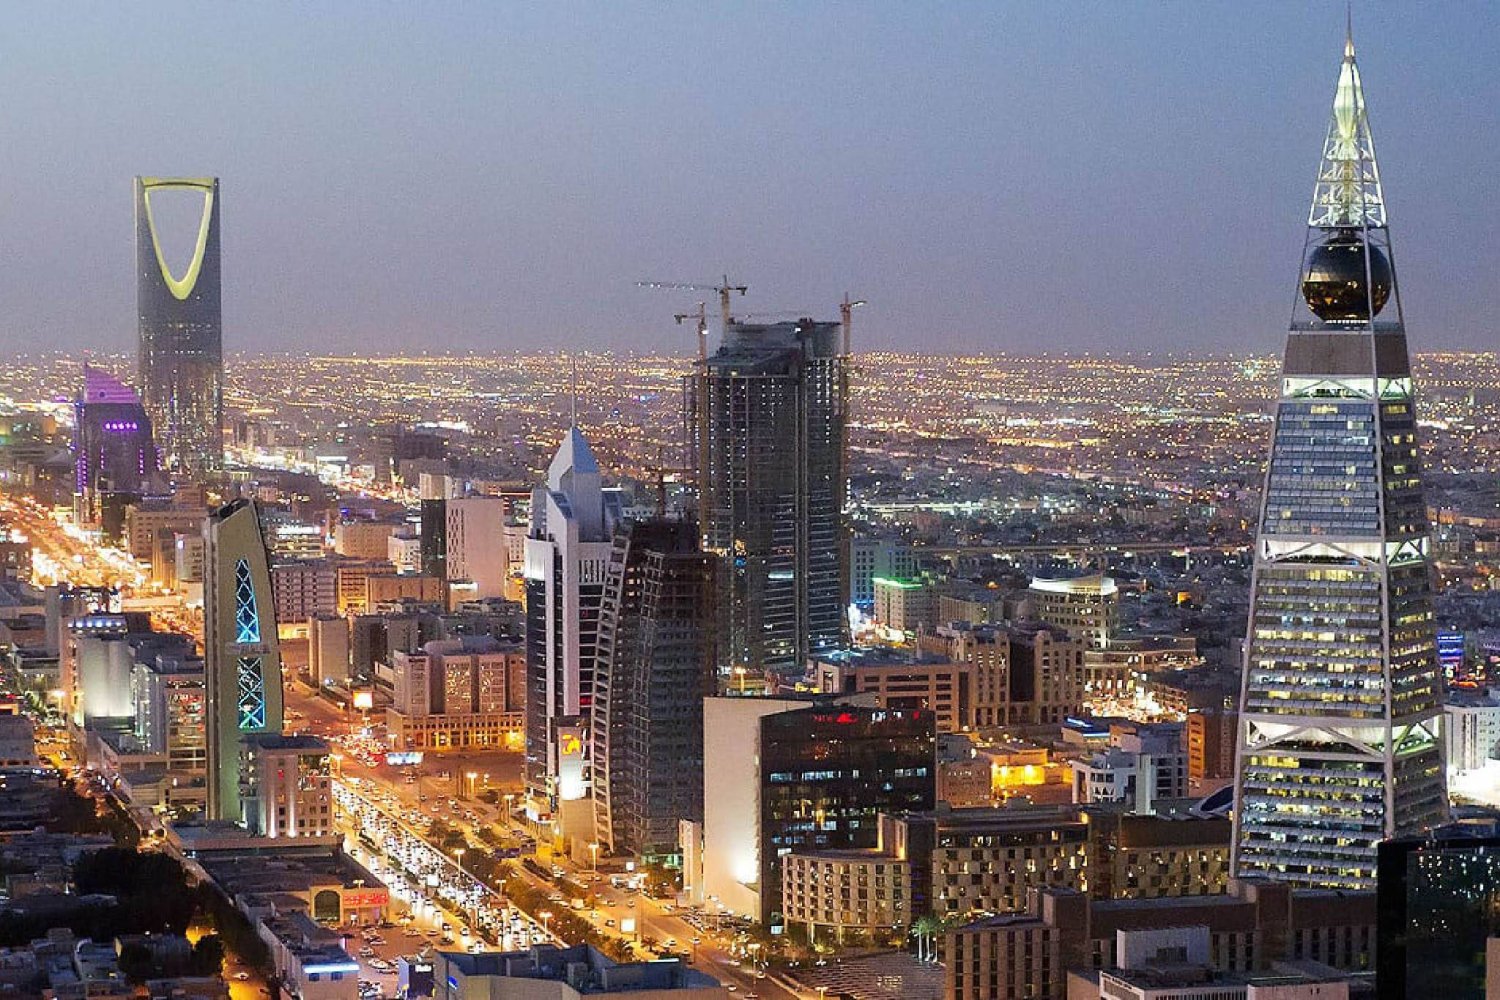 إطار التمويل الأخضر في السعودية يجسد خطوة مهمة نحو تحقيق 2030 (الشرق الأوسط)